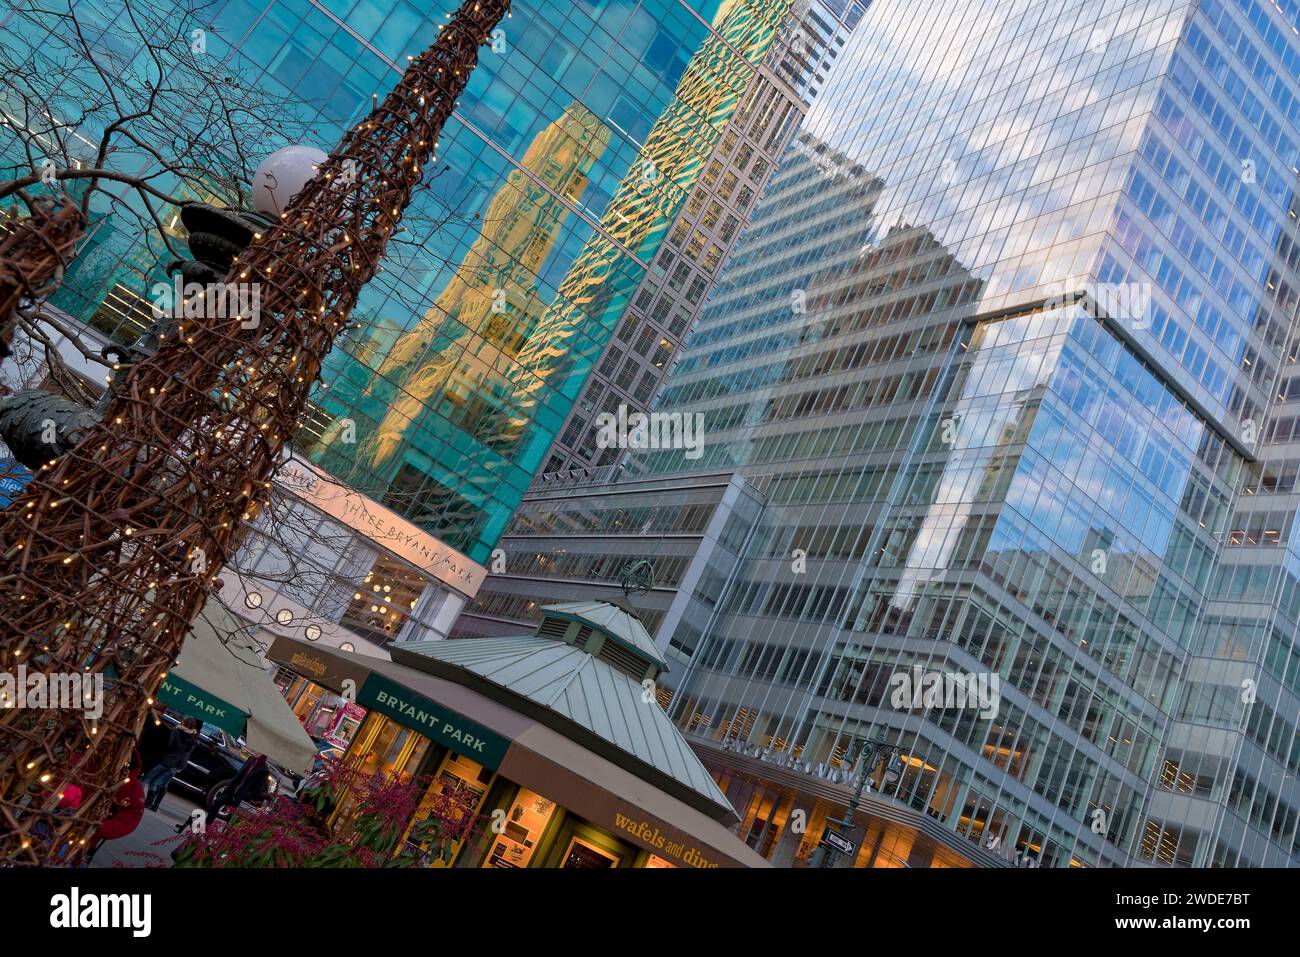 Reflets dans les buildings aux Fassades de verres, offrant du graphisme, Autour de Bryant Park et du Winter Village à Manhattan Stockfoto